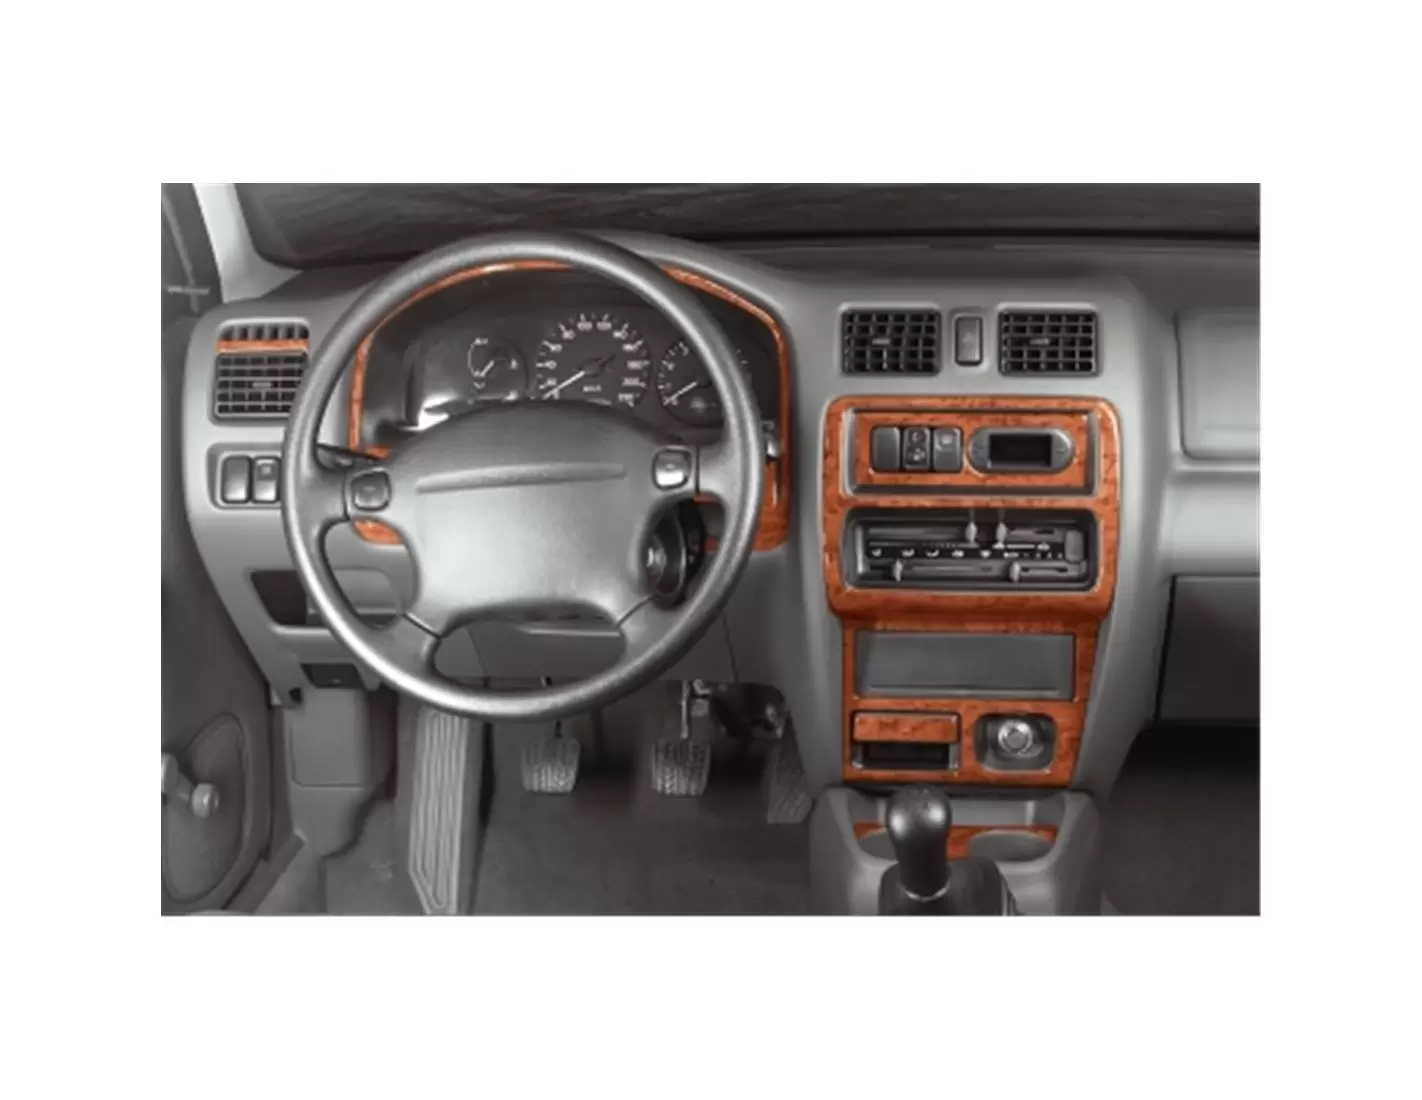 Mazda 323 01.1996 3M 3D Interior Dashboard Trim Kit Dash Trim Dekor 8-Parts